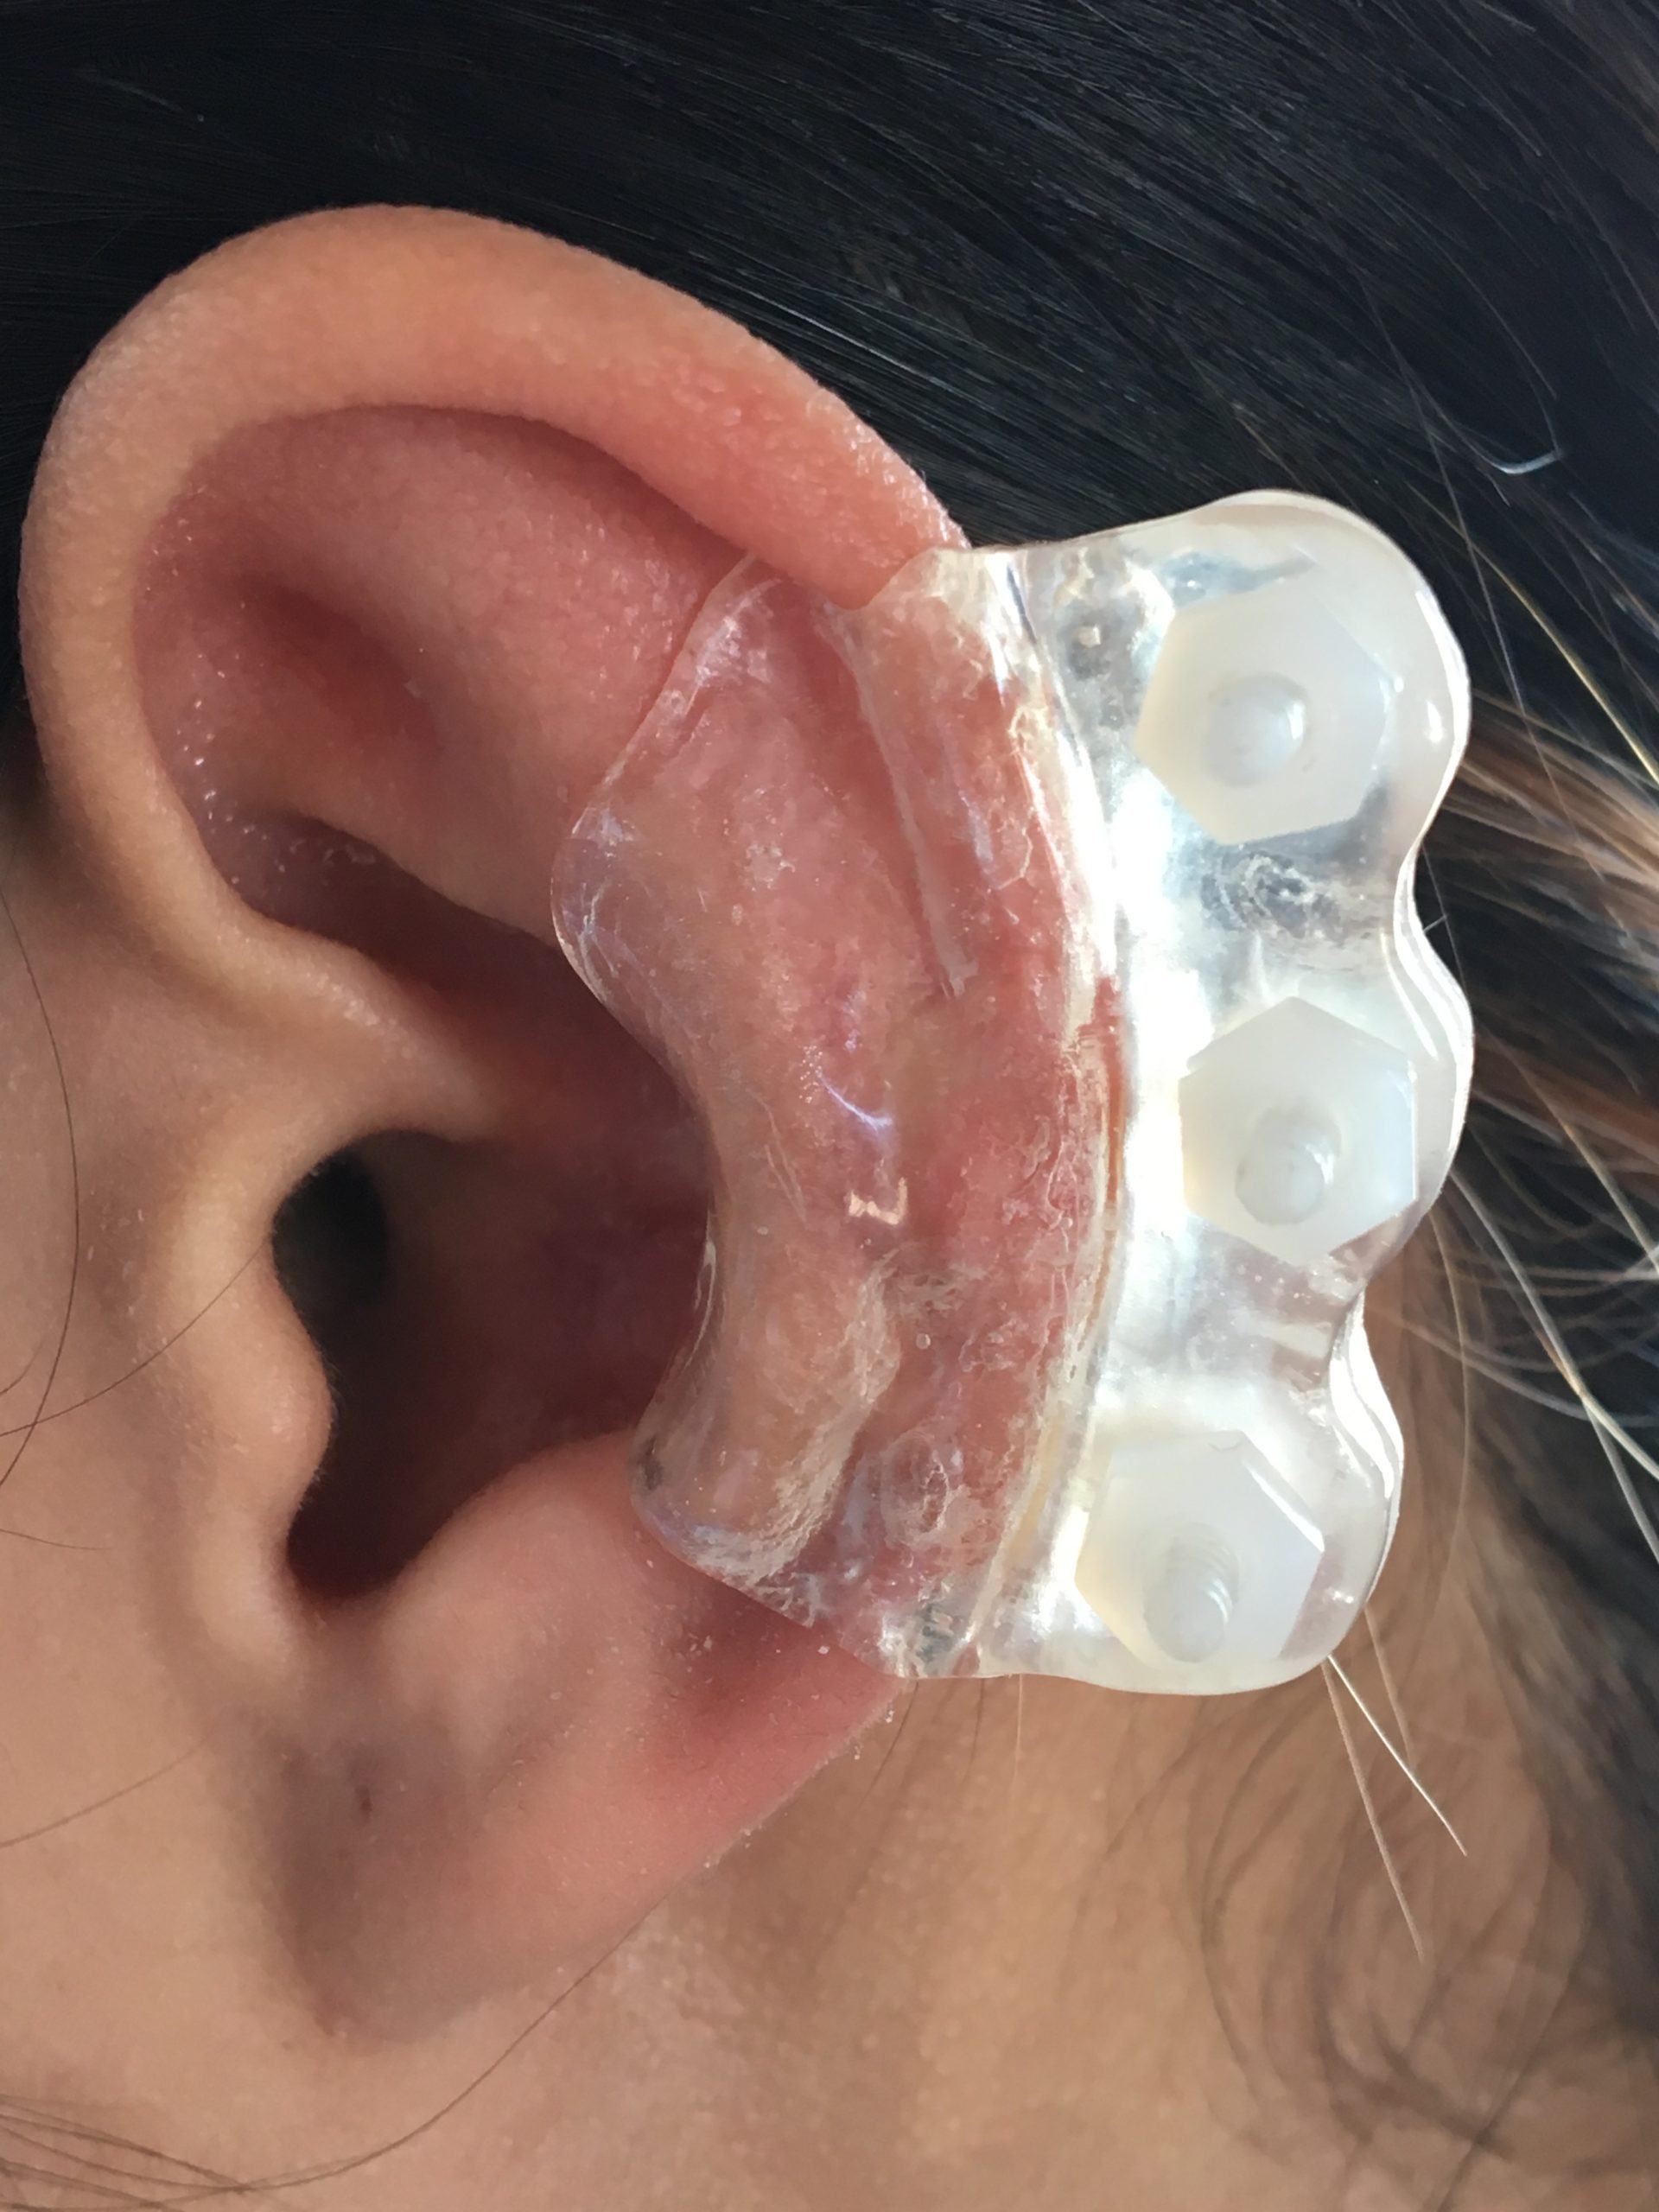 Ear Keloid Compression Plastic Discs Plastic Disc Earring for Post-op Keloid  Pressure model dogbone 